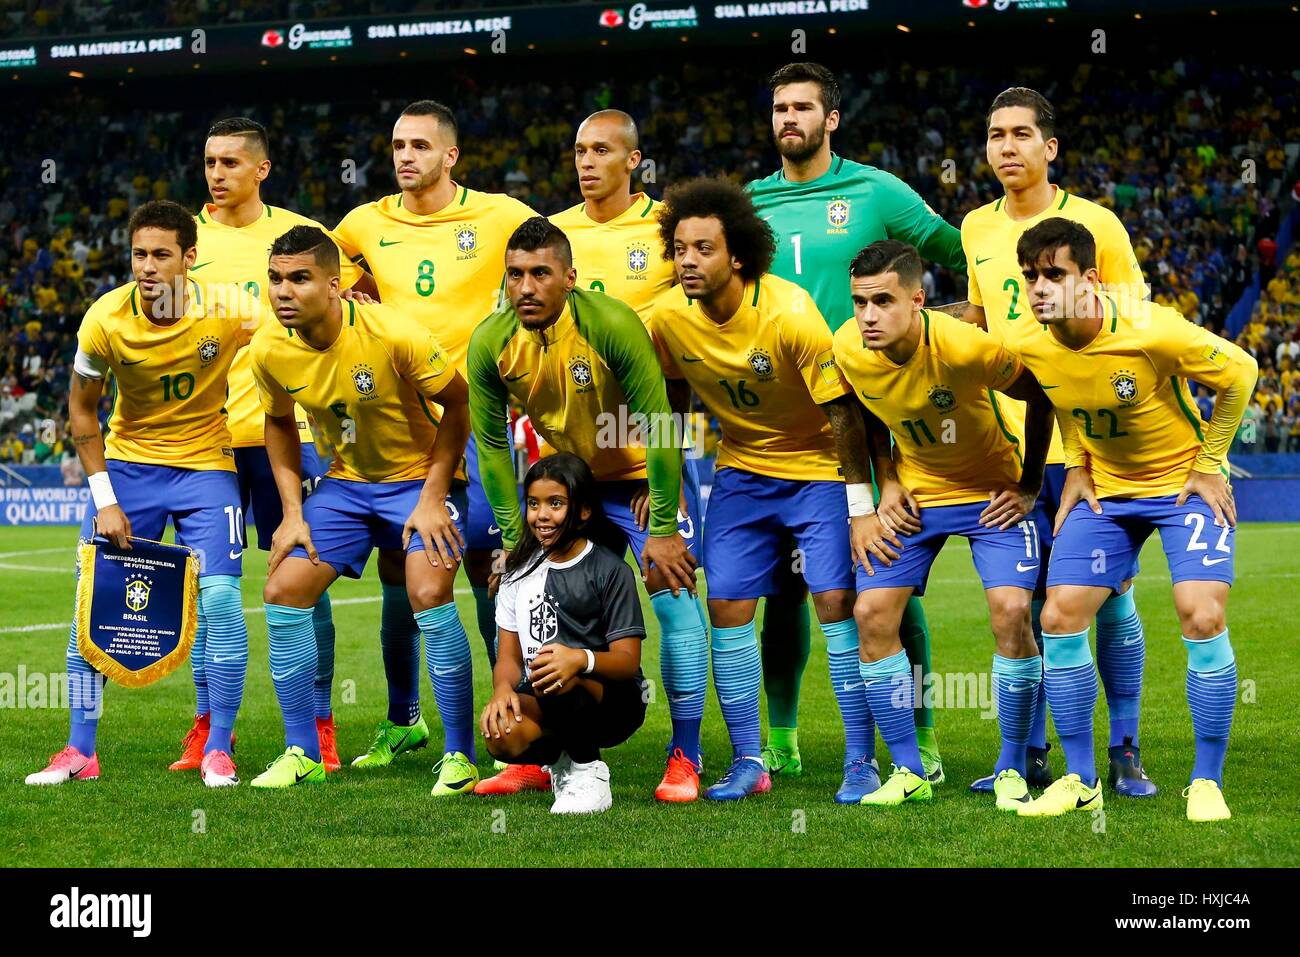 Soccer Wallpaper: Brazil National Team  Soccer post, Men's soccer teams,  Brazil football team